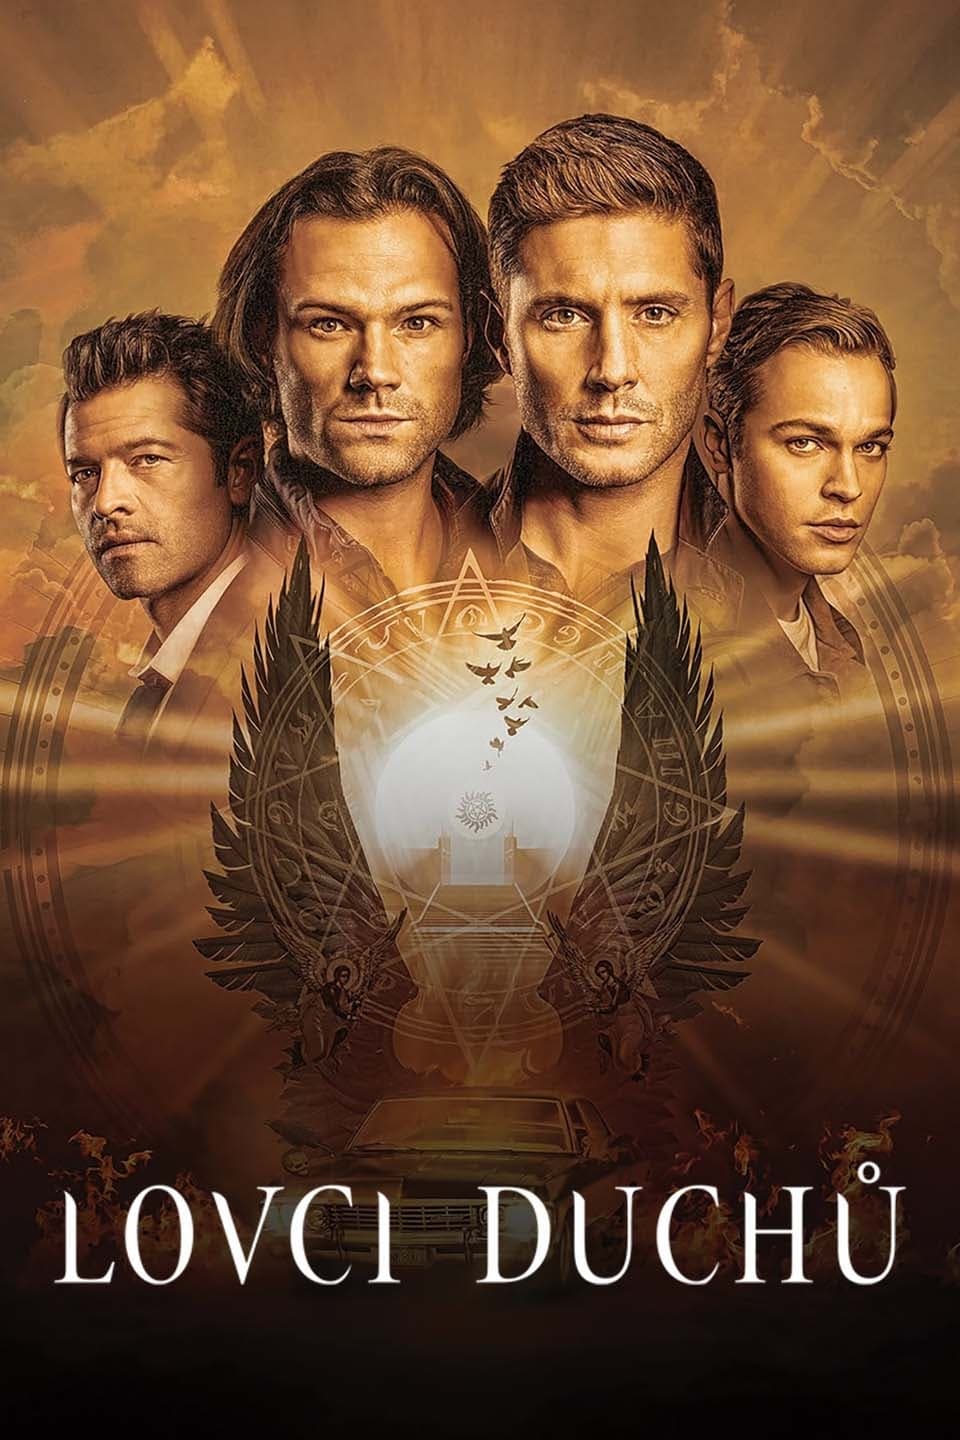 Plakát pro film “Lovci duchů”